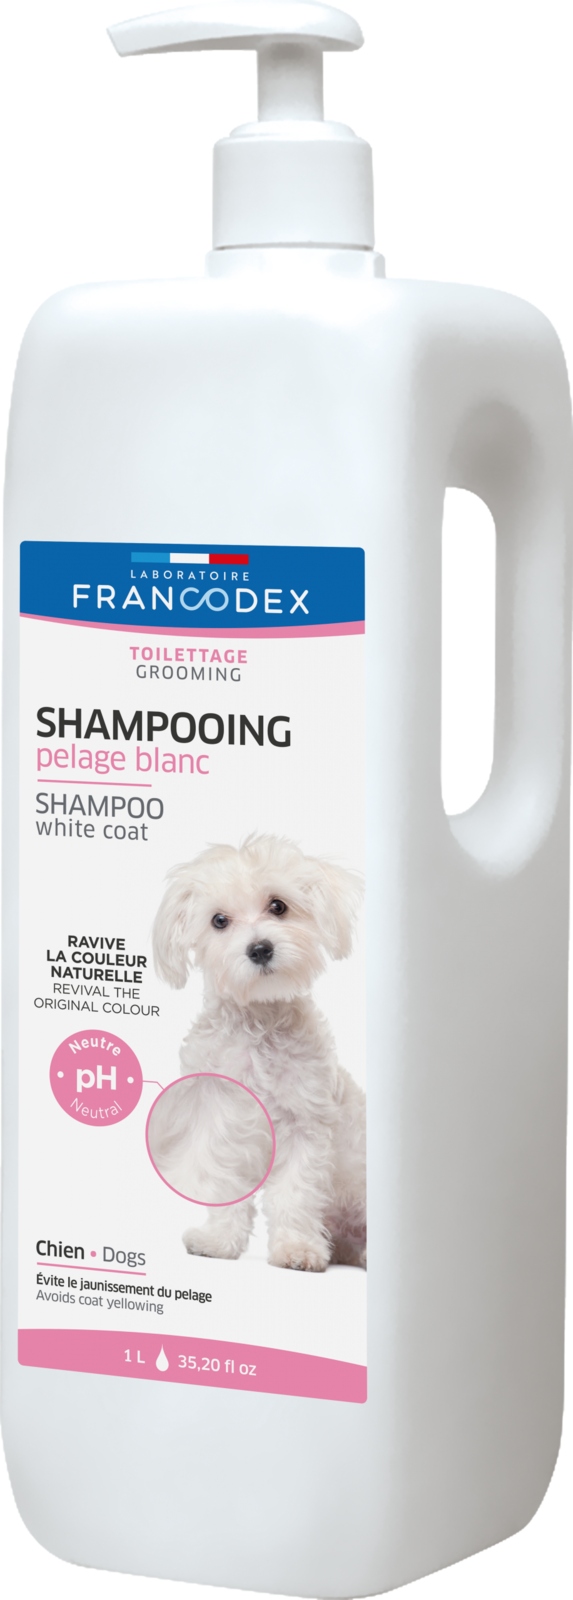 szampon beaphar dla psów z białą sierścią allegro